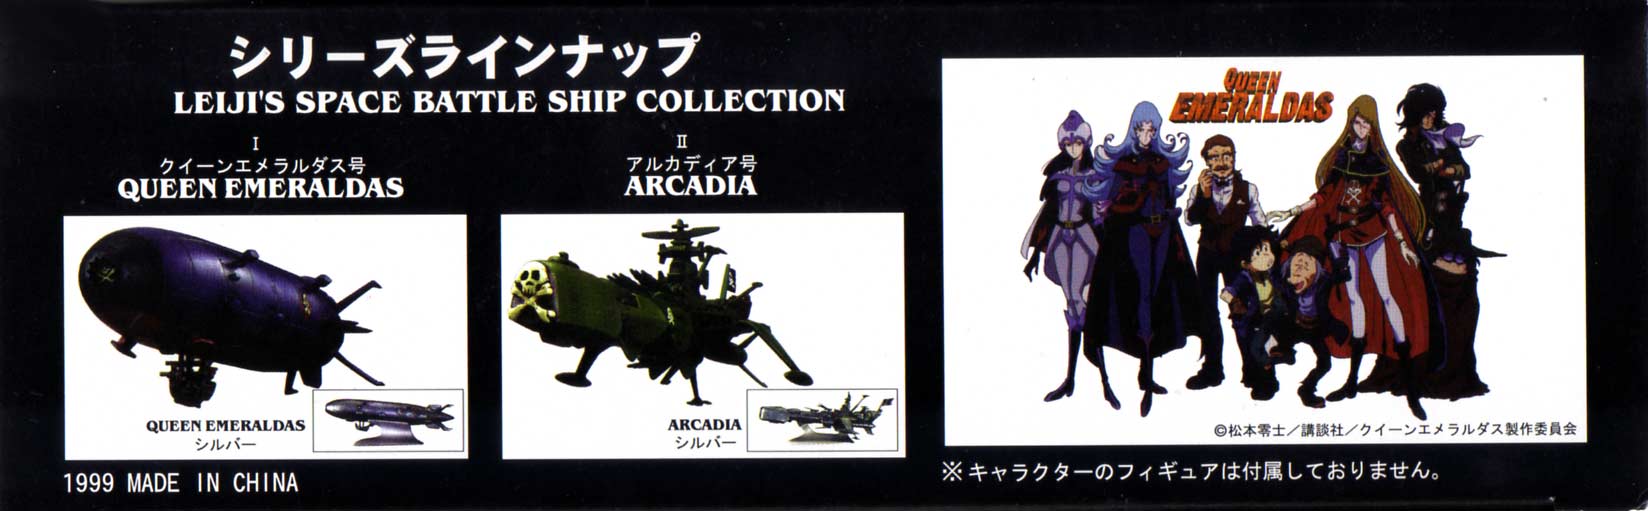 Packaging (gauche) de l'Arcadia de Mabell de la collection Leiji's Space ship